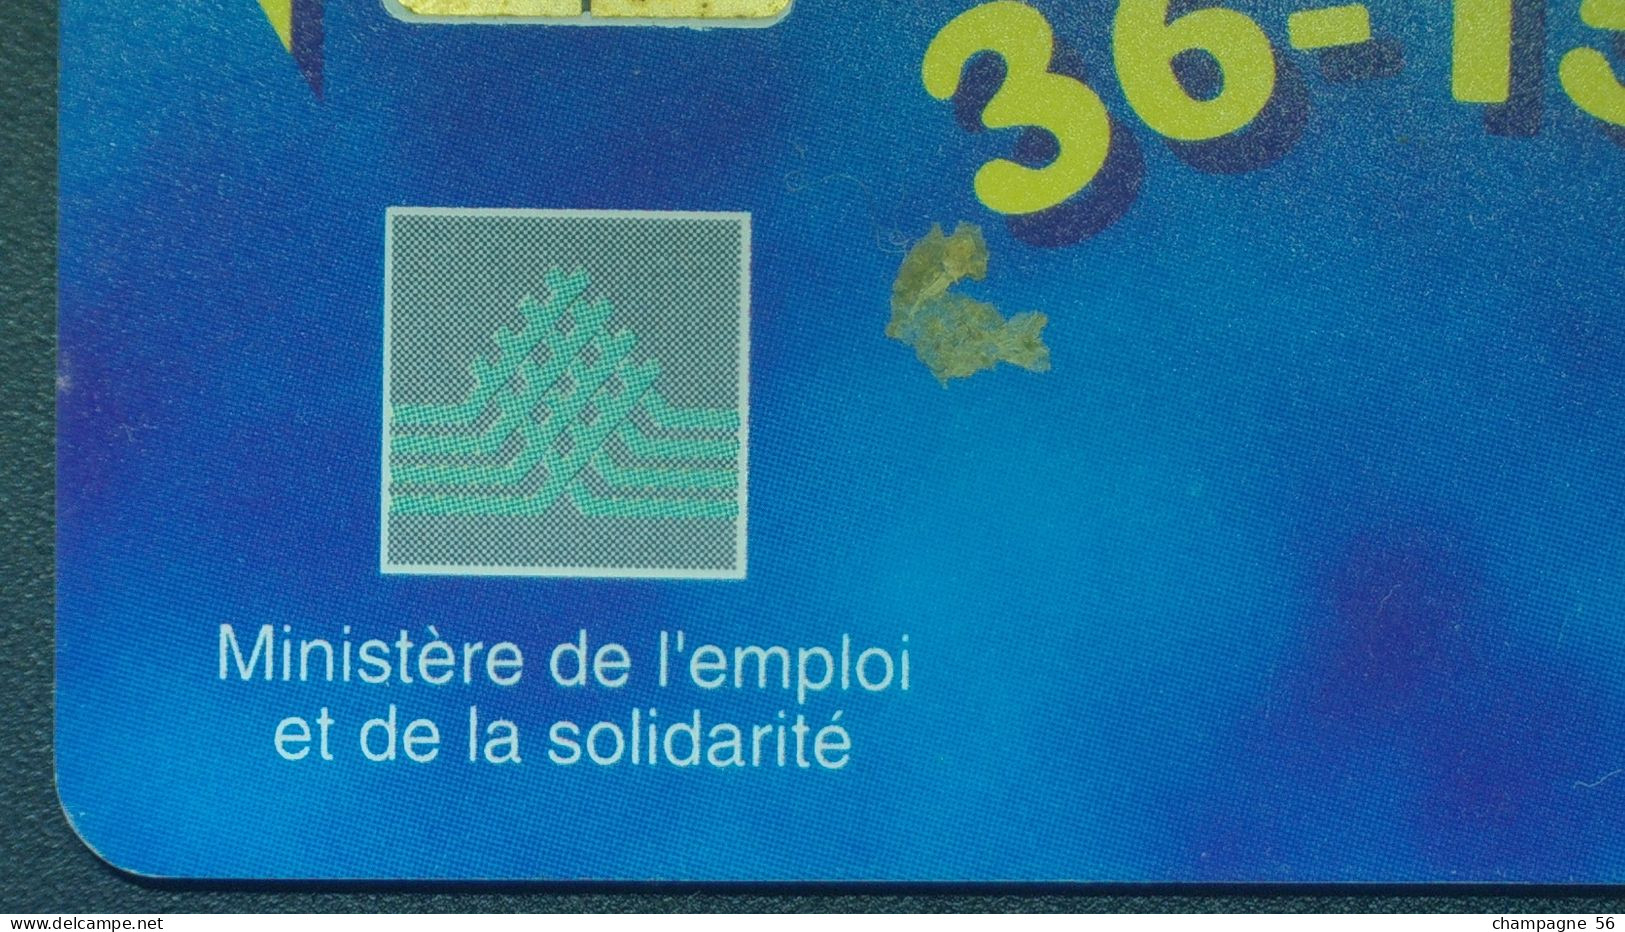 VARIÉTÉS FRANCE 97 F804  50 / 11 / 97 SO3 LE 36-15 EMPLOI   50 UNITES UTILISÉE - Fehldrucke